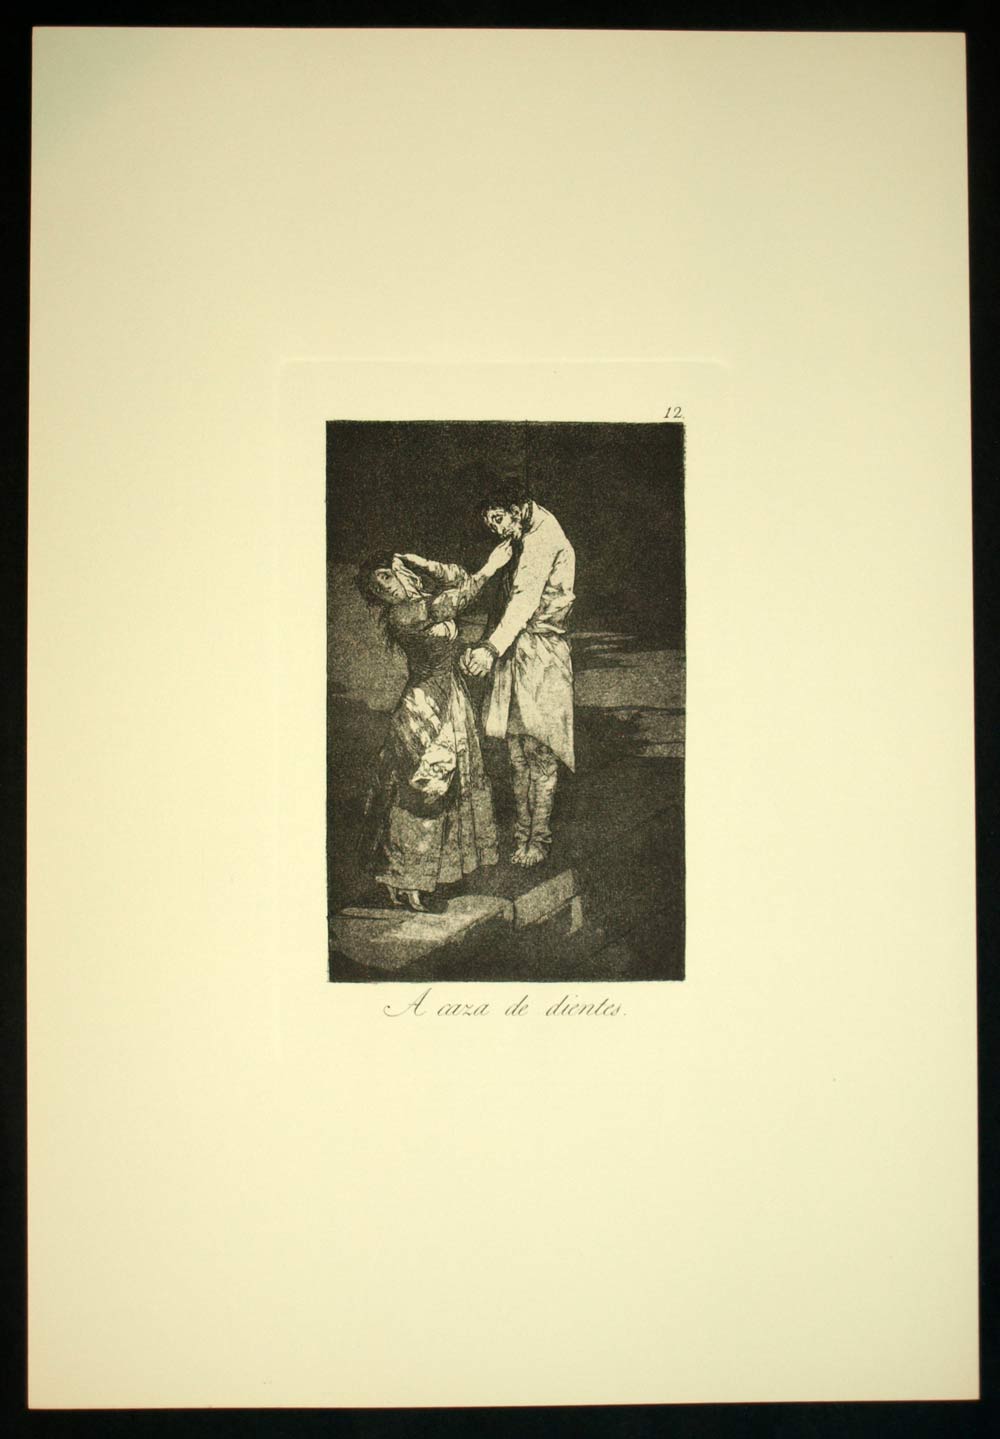 CAZA DE DIENTES, Francisco de Goya, eau forte gravure de los caprichos 